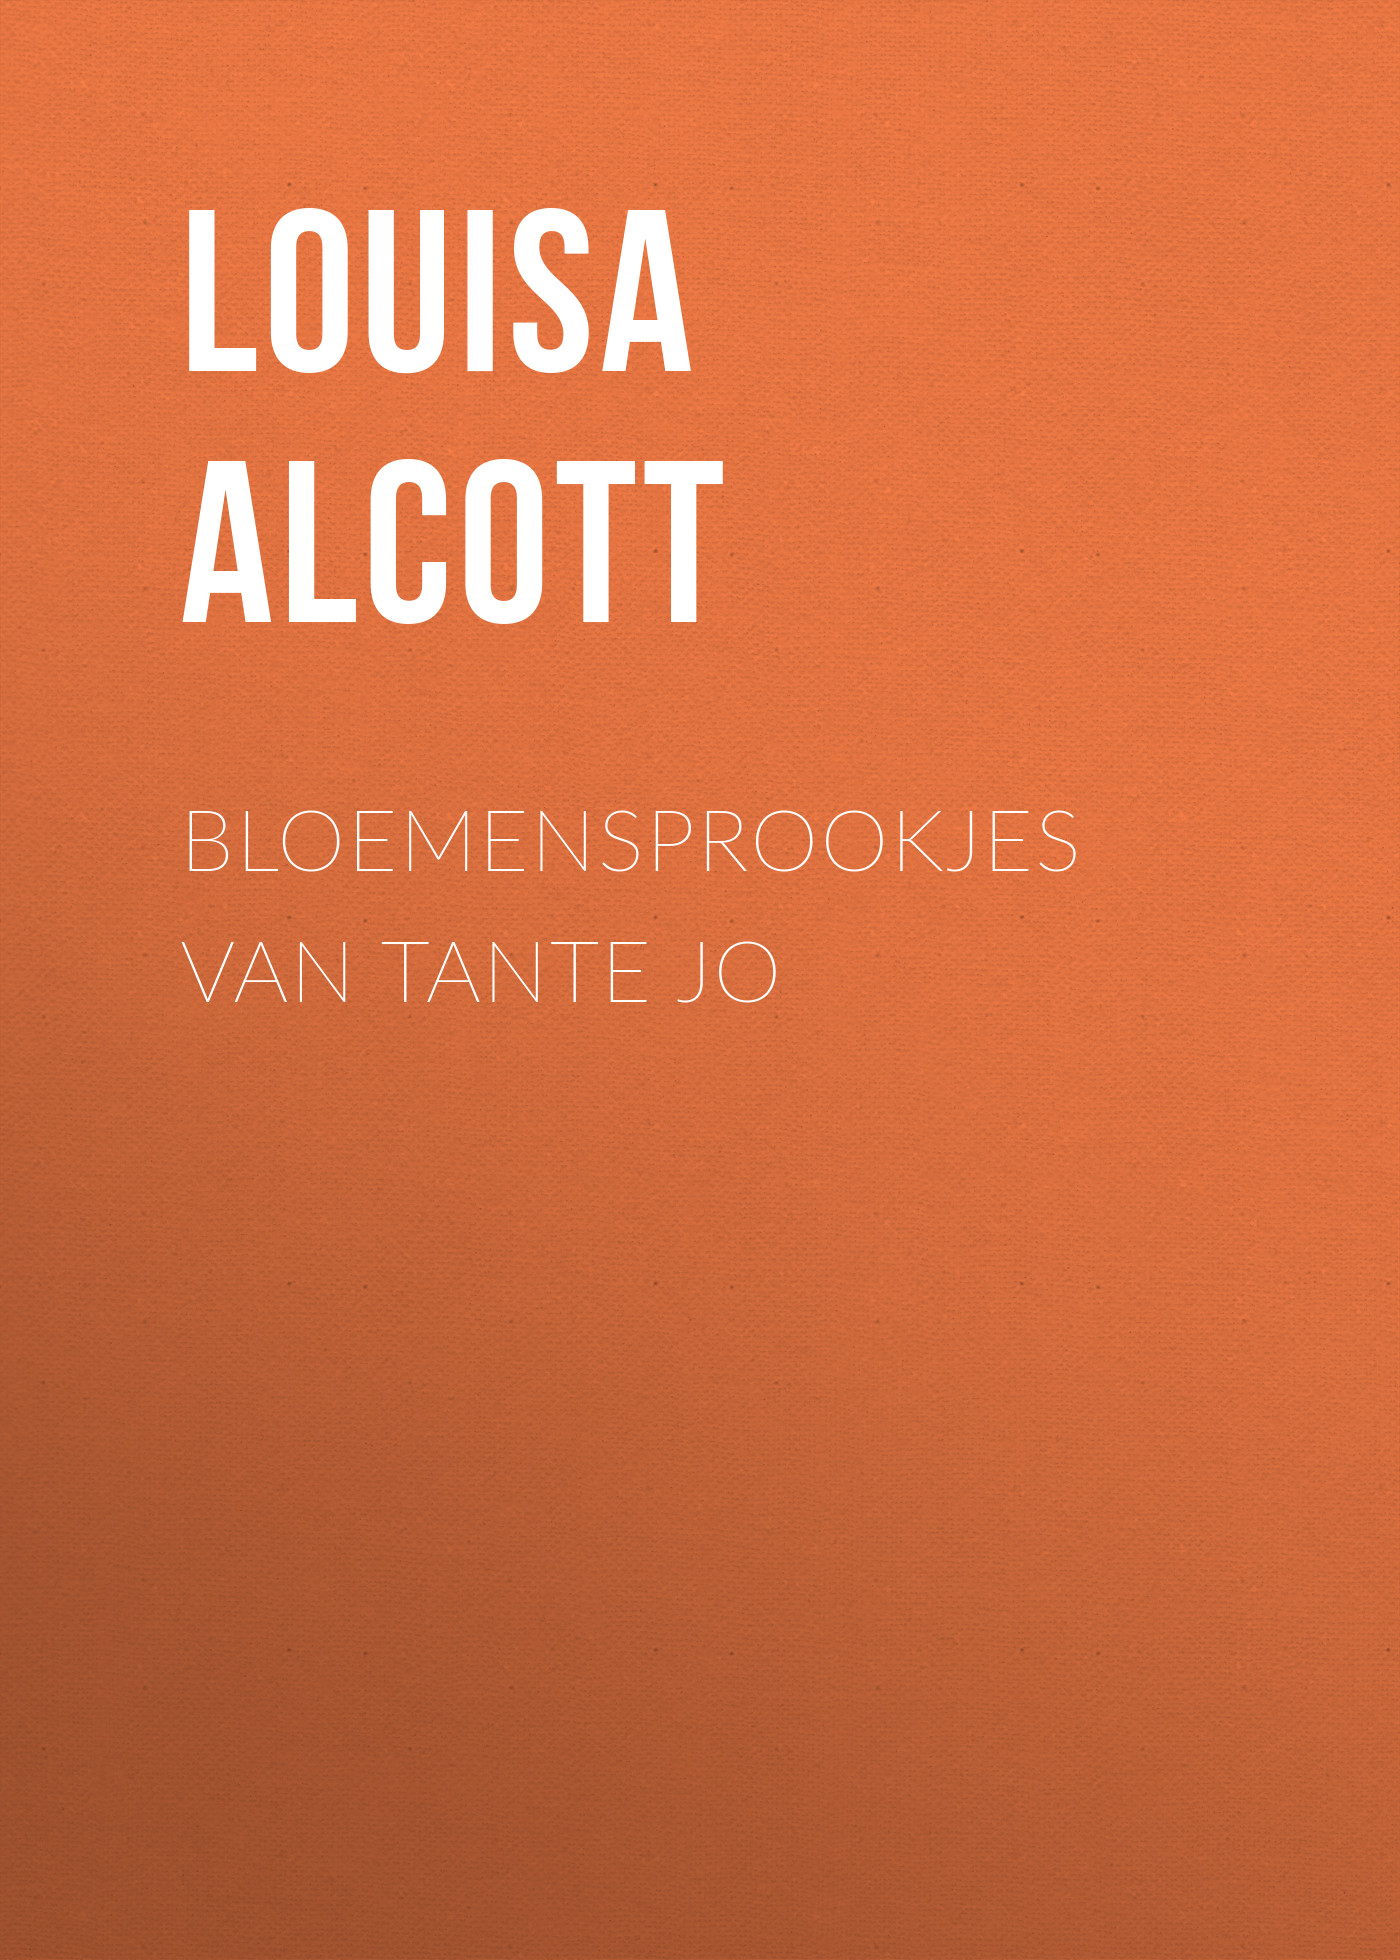 Книга Bloemensprookjes van Tante Jo из серии , созданная Louisa Alcott, может относится к жанру Зарубежная старинная литература, Зарубежная классика. Стоимость электронной книги Bloemensprookjes van Tante Jo с идентификатором 24175436 составляет 5.99 руб.